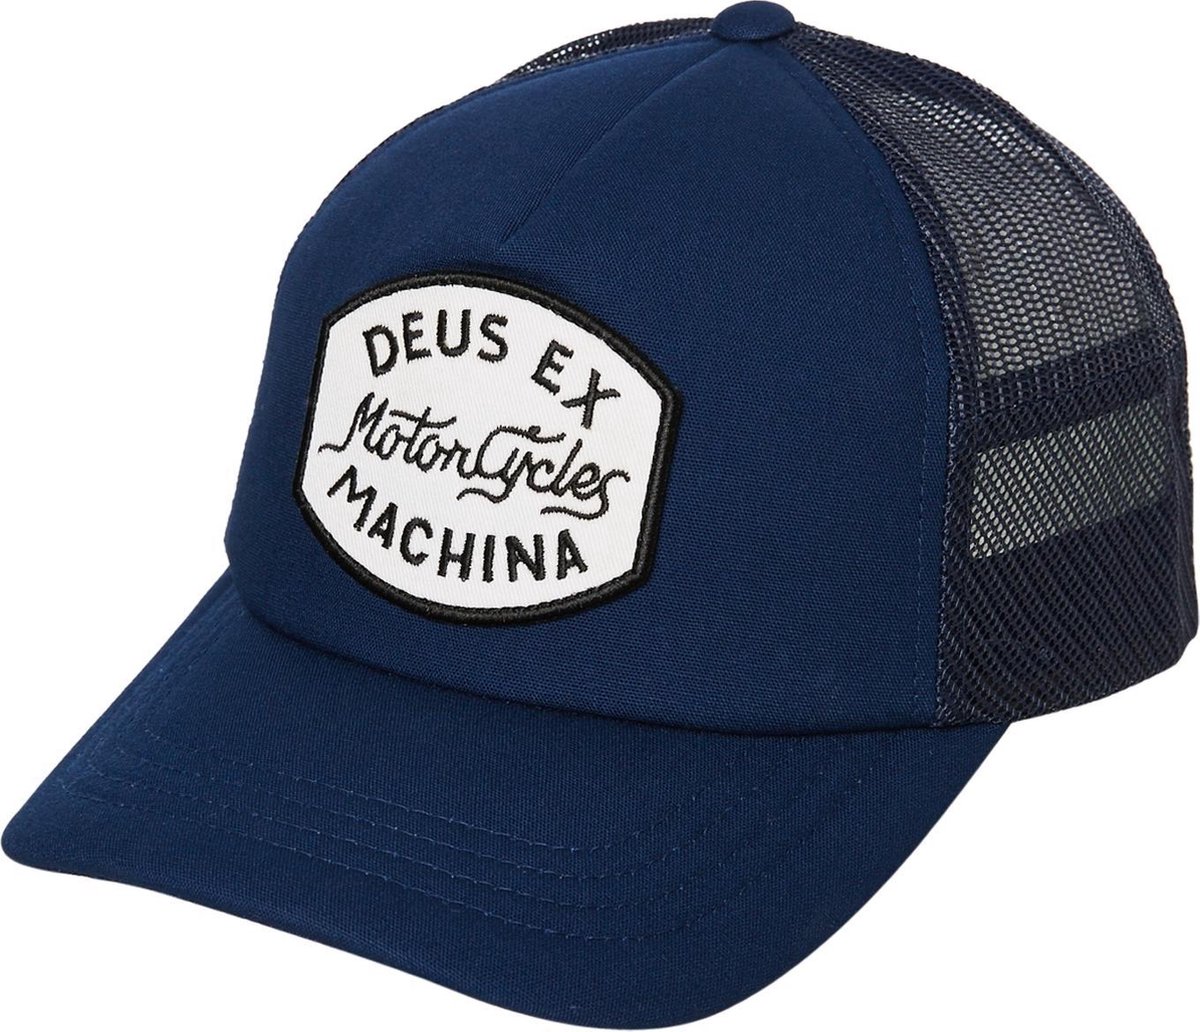 DEUS Vrod Trucker cap - Navy - Deus Ex Machina